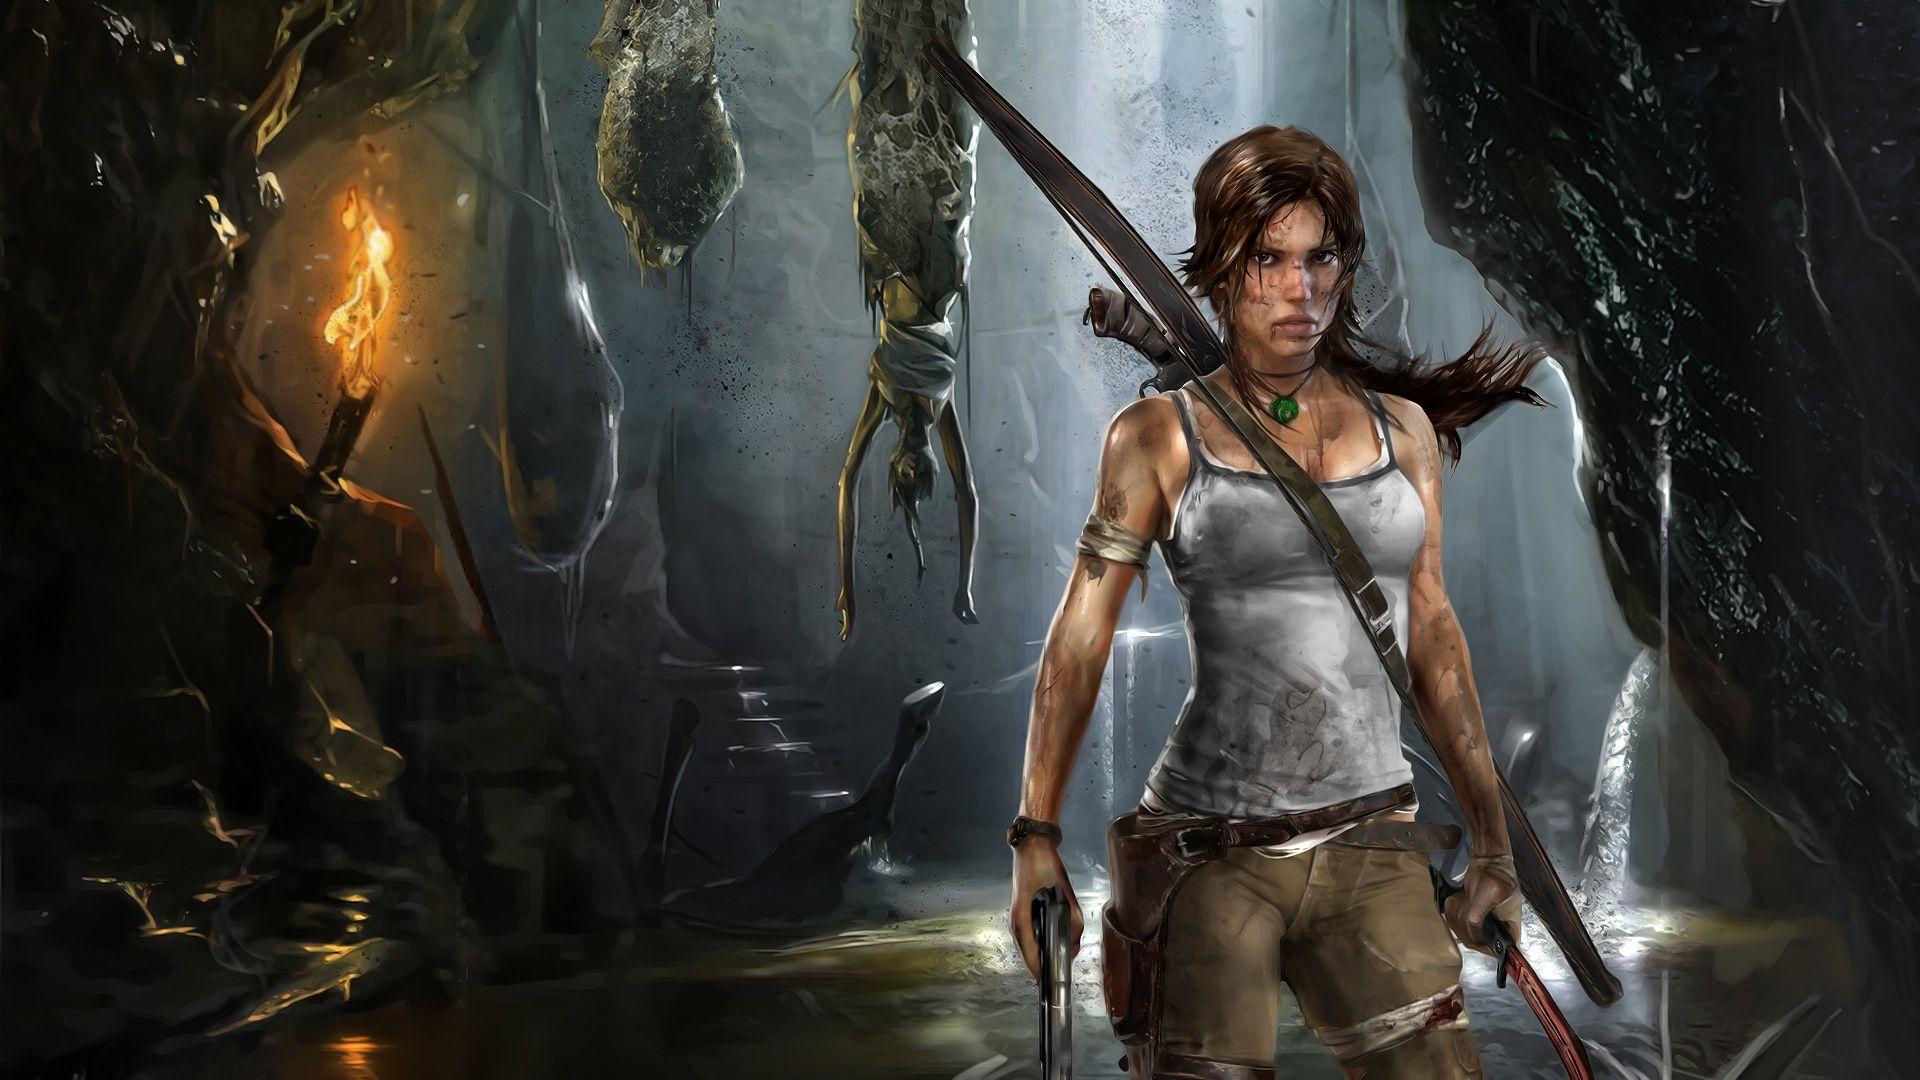 Lara Croft Reborn Wallpaper in jpg format for free download